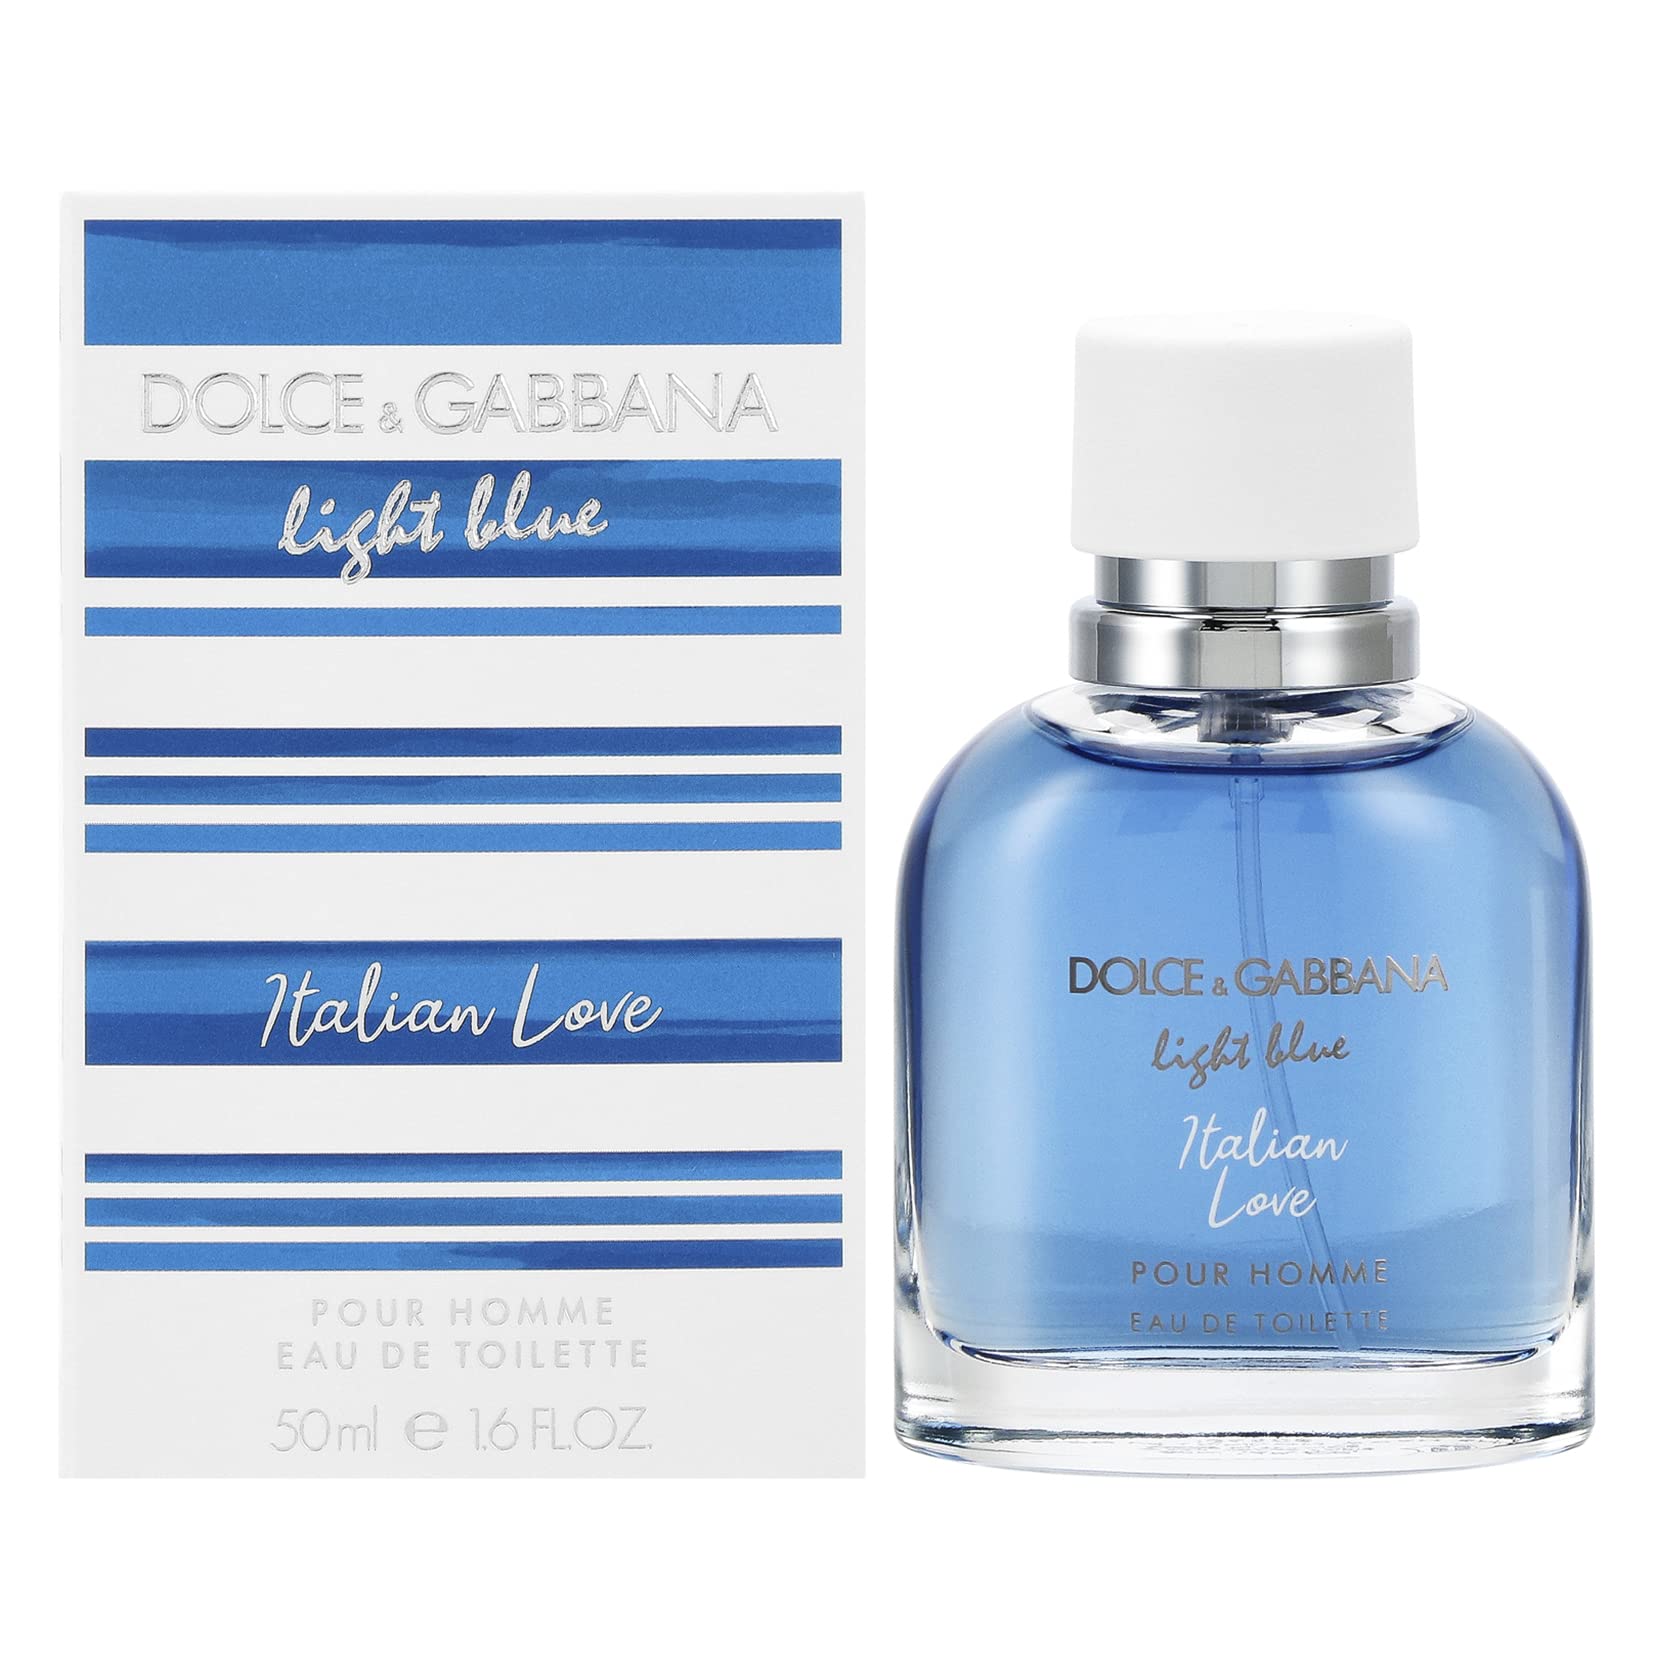 Dolce & Gabbana Light blue Italian Love pour Homme 100ML - beautyonedz